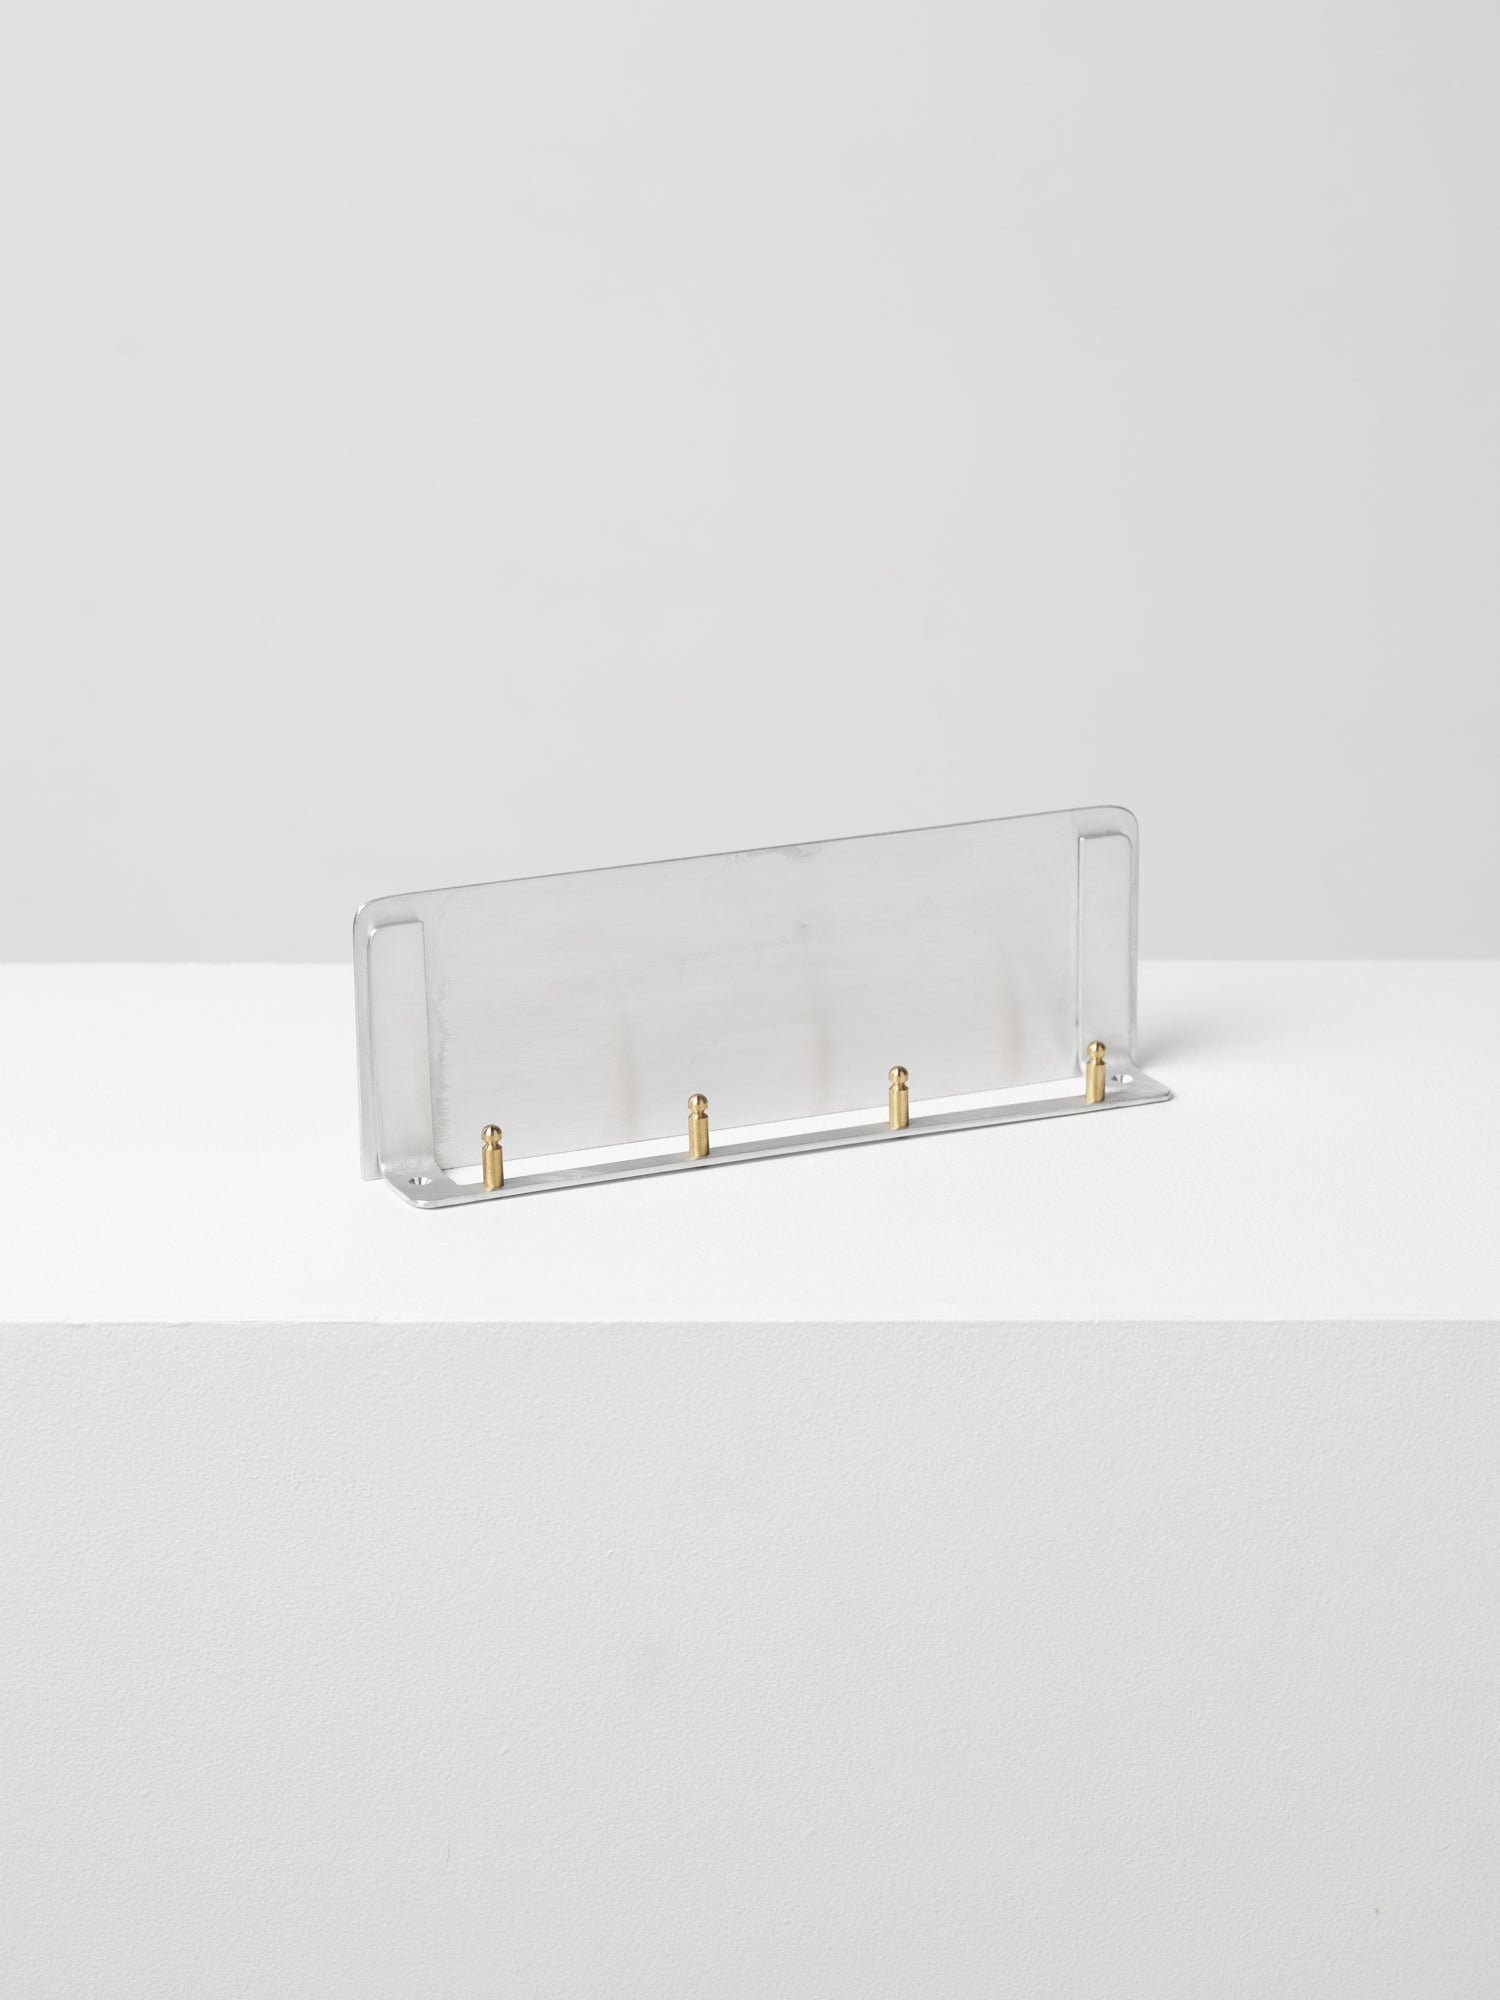 Aluminium & Brass Mini Shelf, BOLTS Hardware Japan